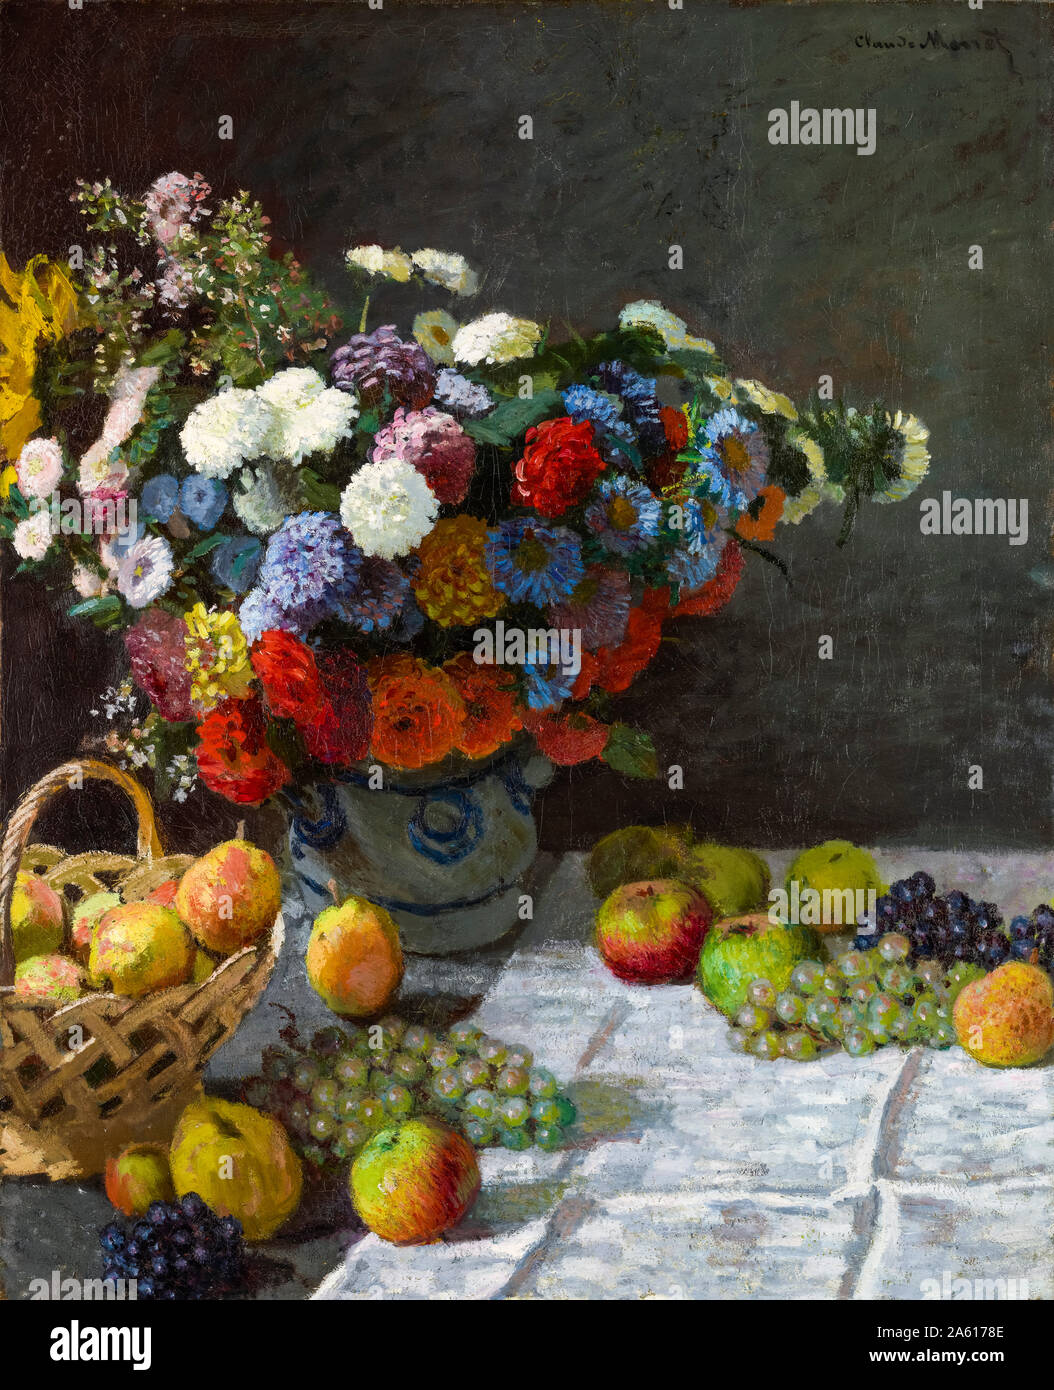 Claude Monet, Nature morte avec fleurs et fruits, peinture, 1869 Banque D'Images